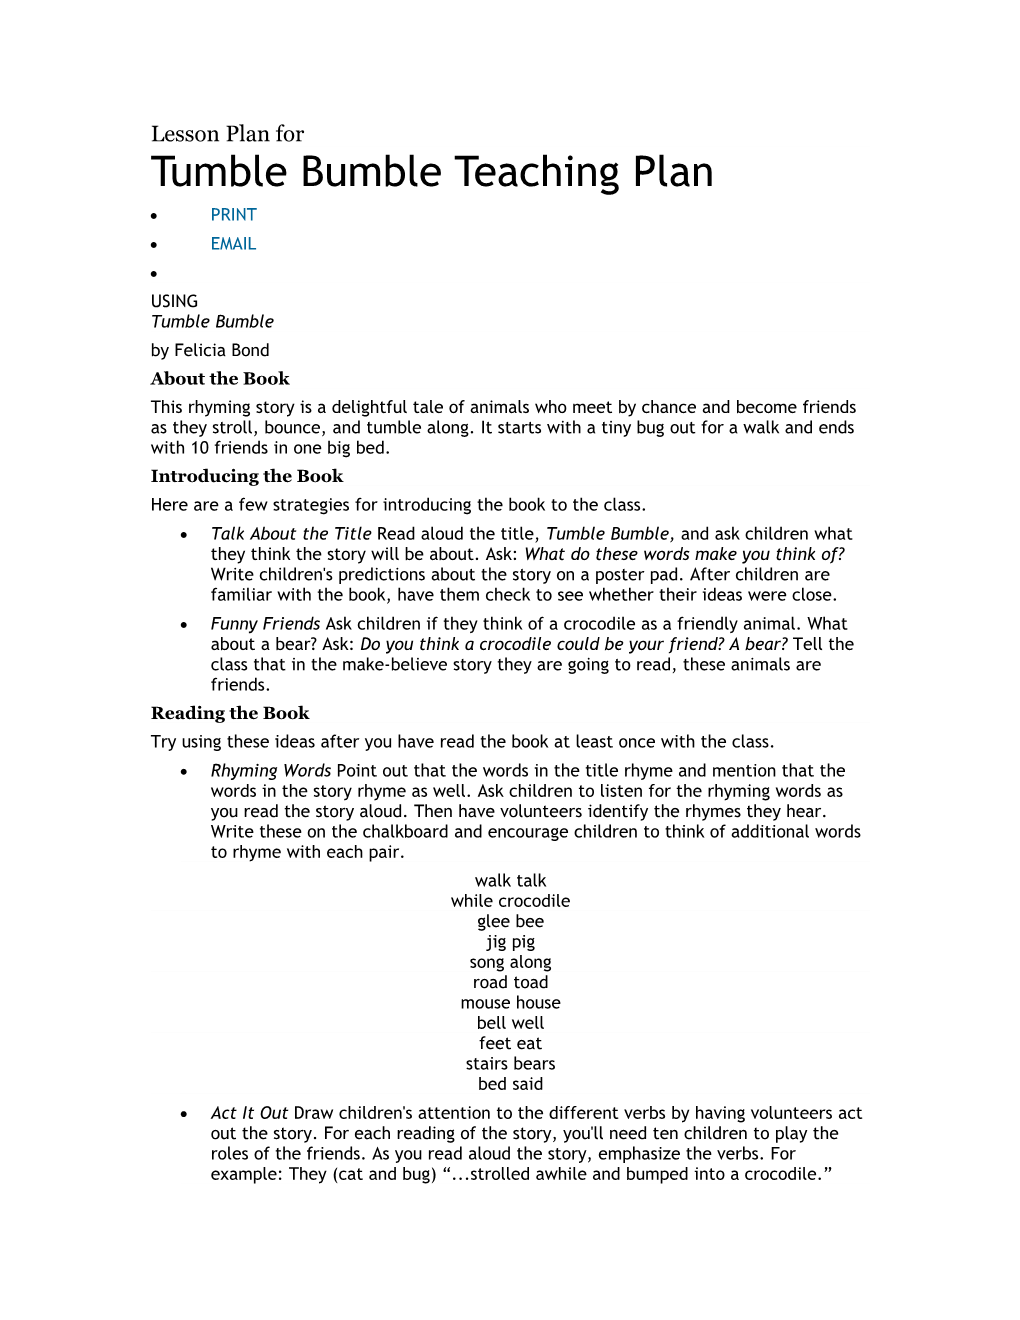 Tumble Bumble Teaching Plan